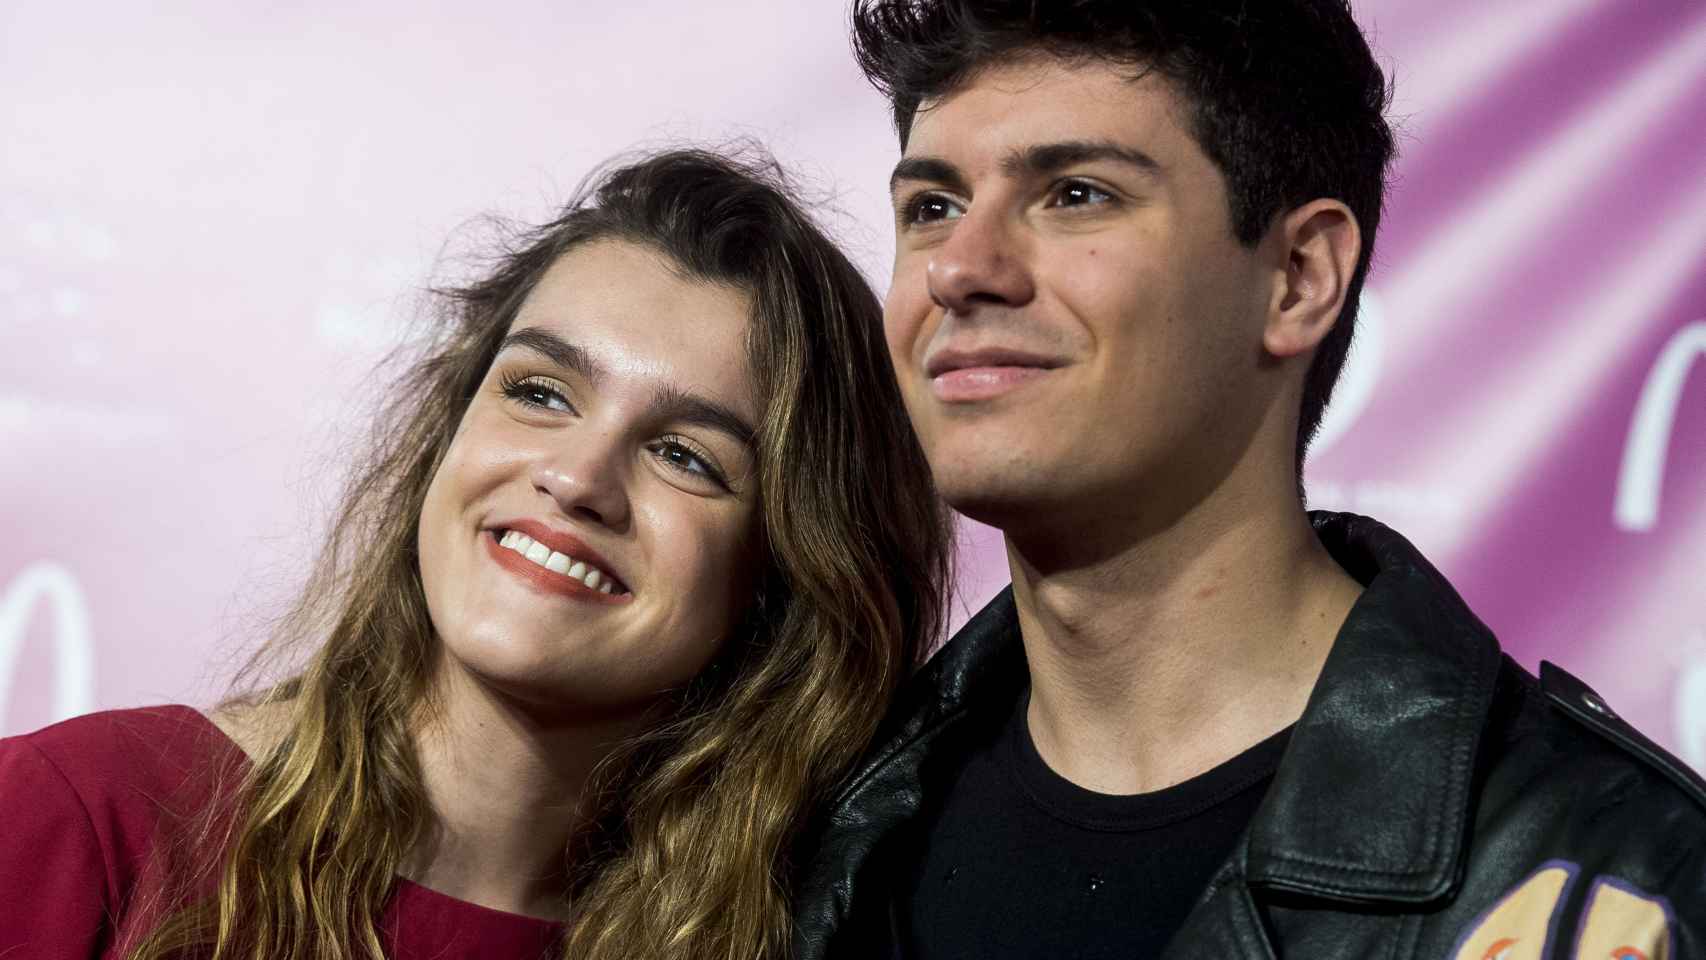 Amaia Romero y Alfred García en un evento promocional previo a Eurovisión 2018.